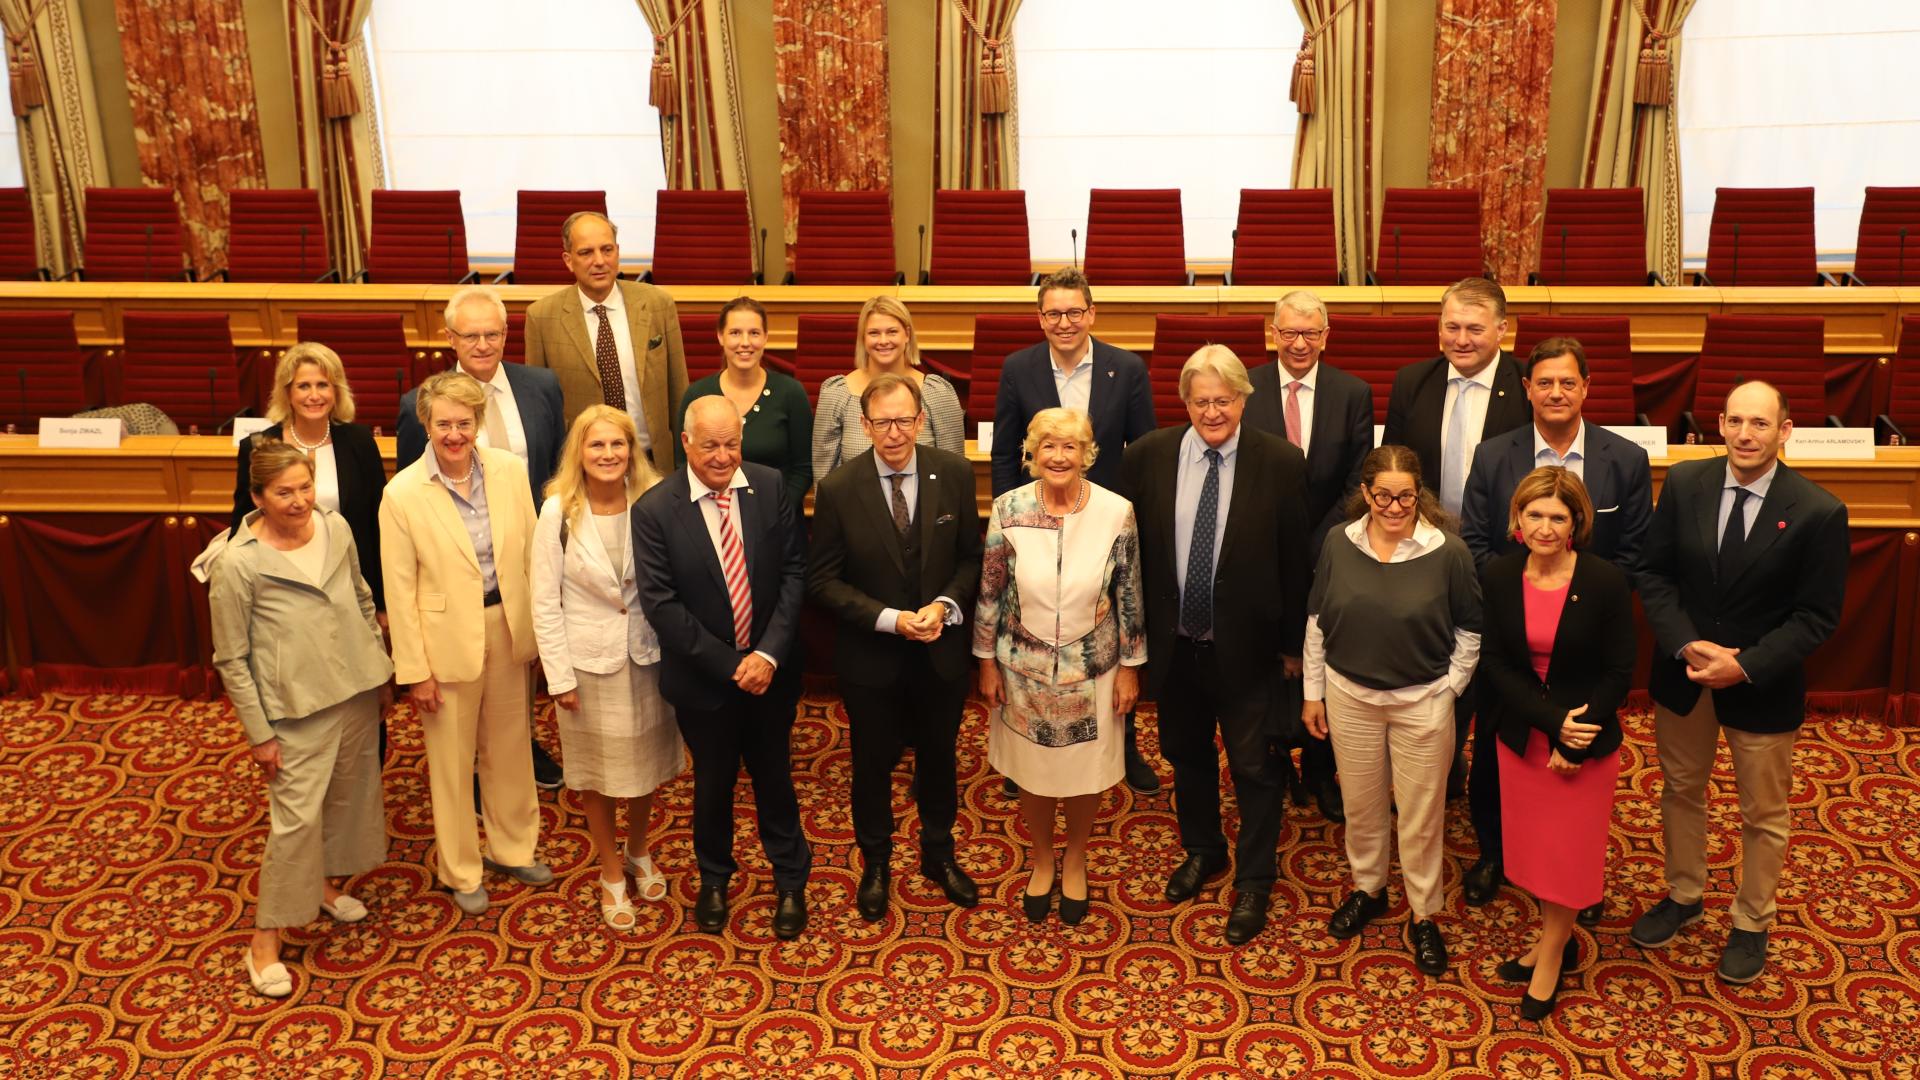 La délégation du Conseil fédéral d'Autriche avec les députés luxembourgeois membres de la Commission des Affaires étrangères et européennes